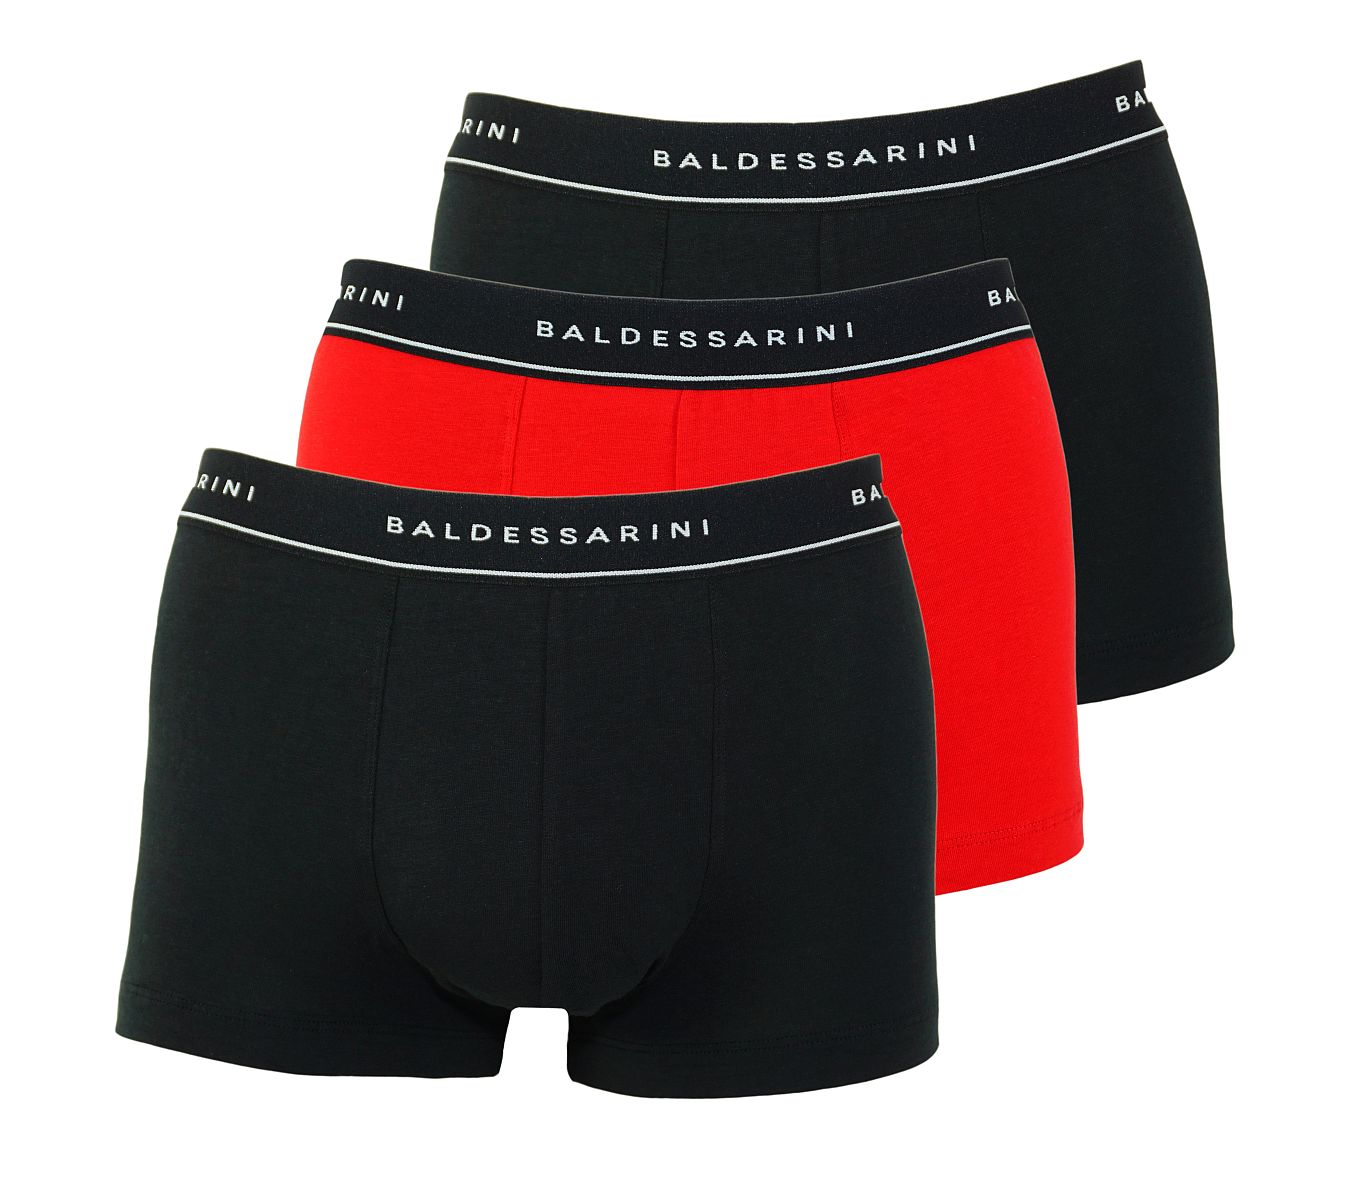 Baldessarini 3er Pack Shorts Trunks 90002 6061 920 black me W18-BSS1